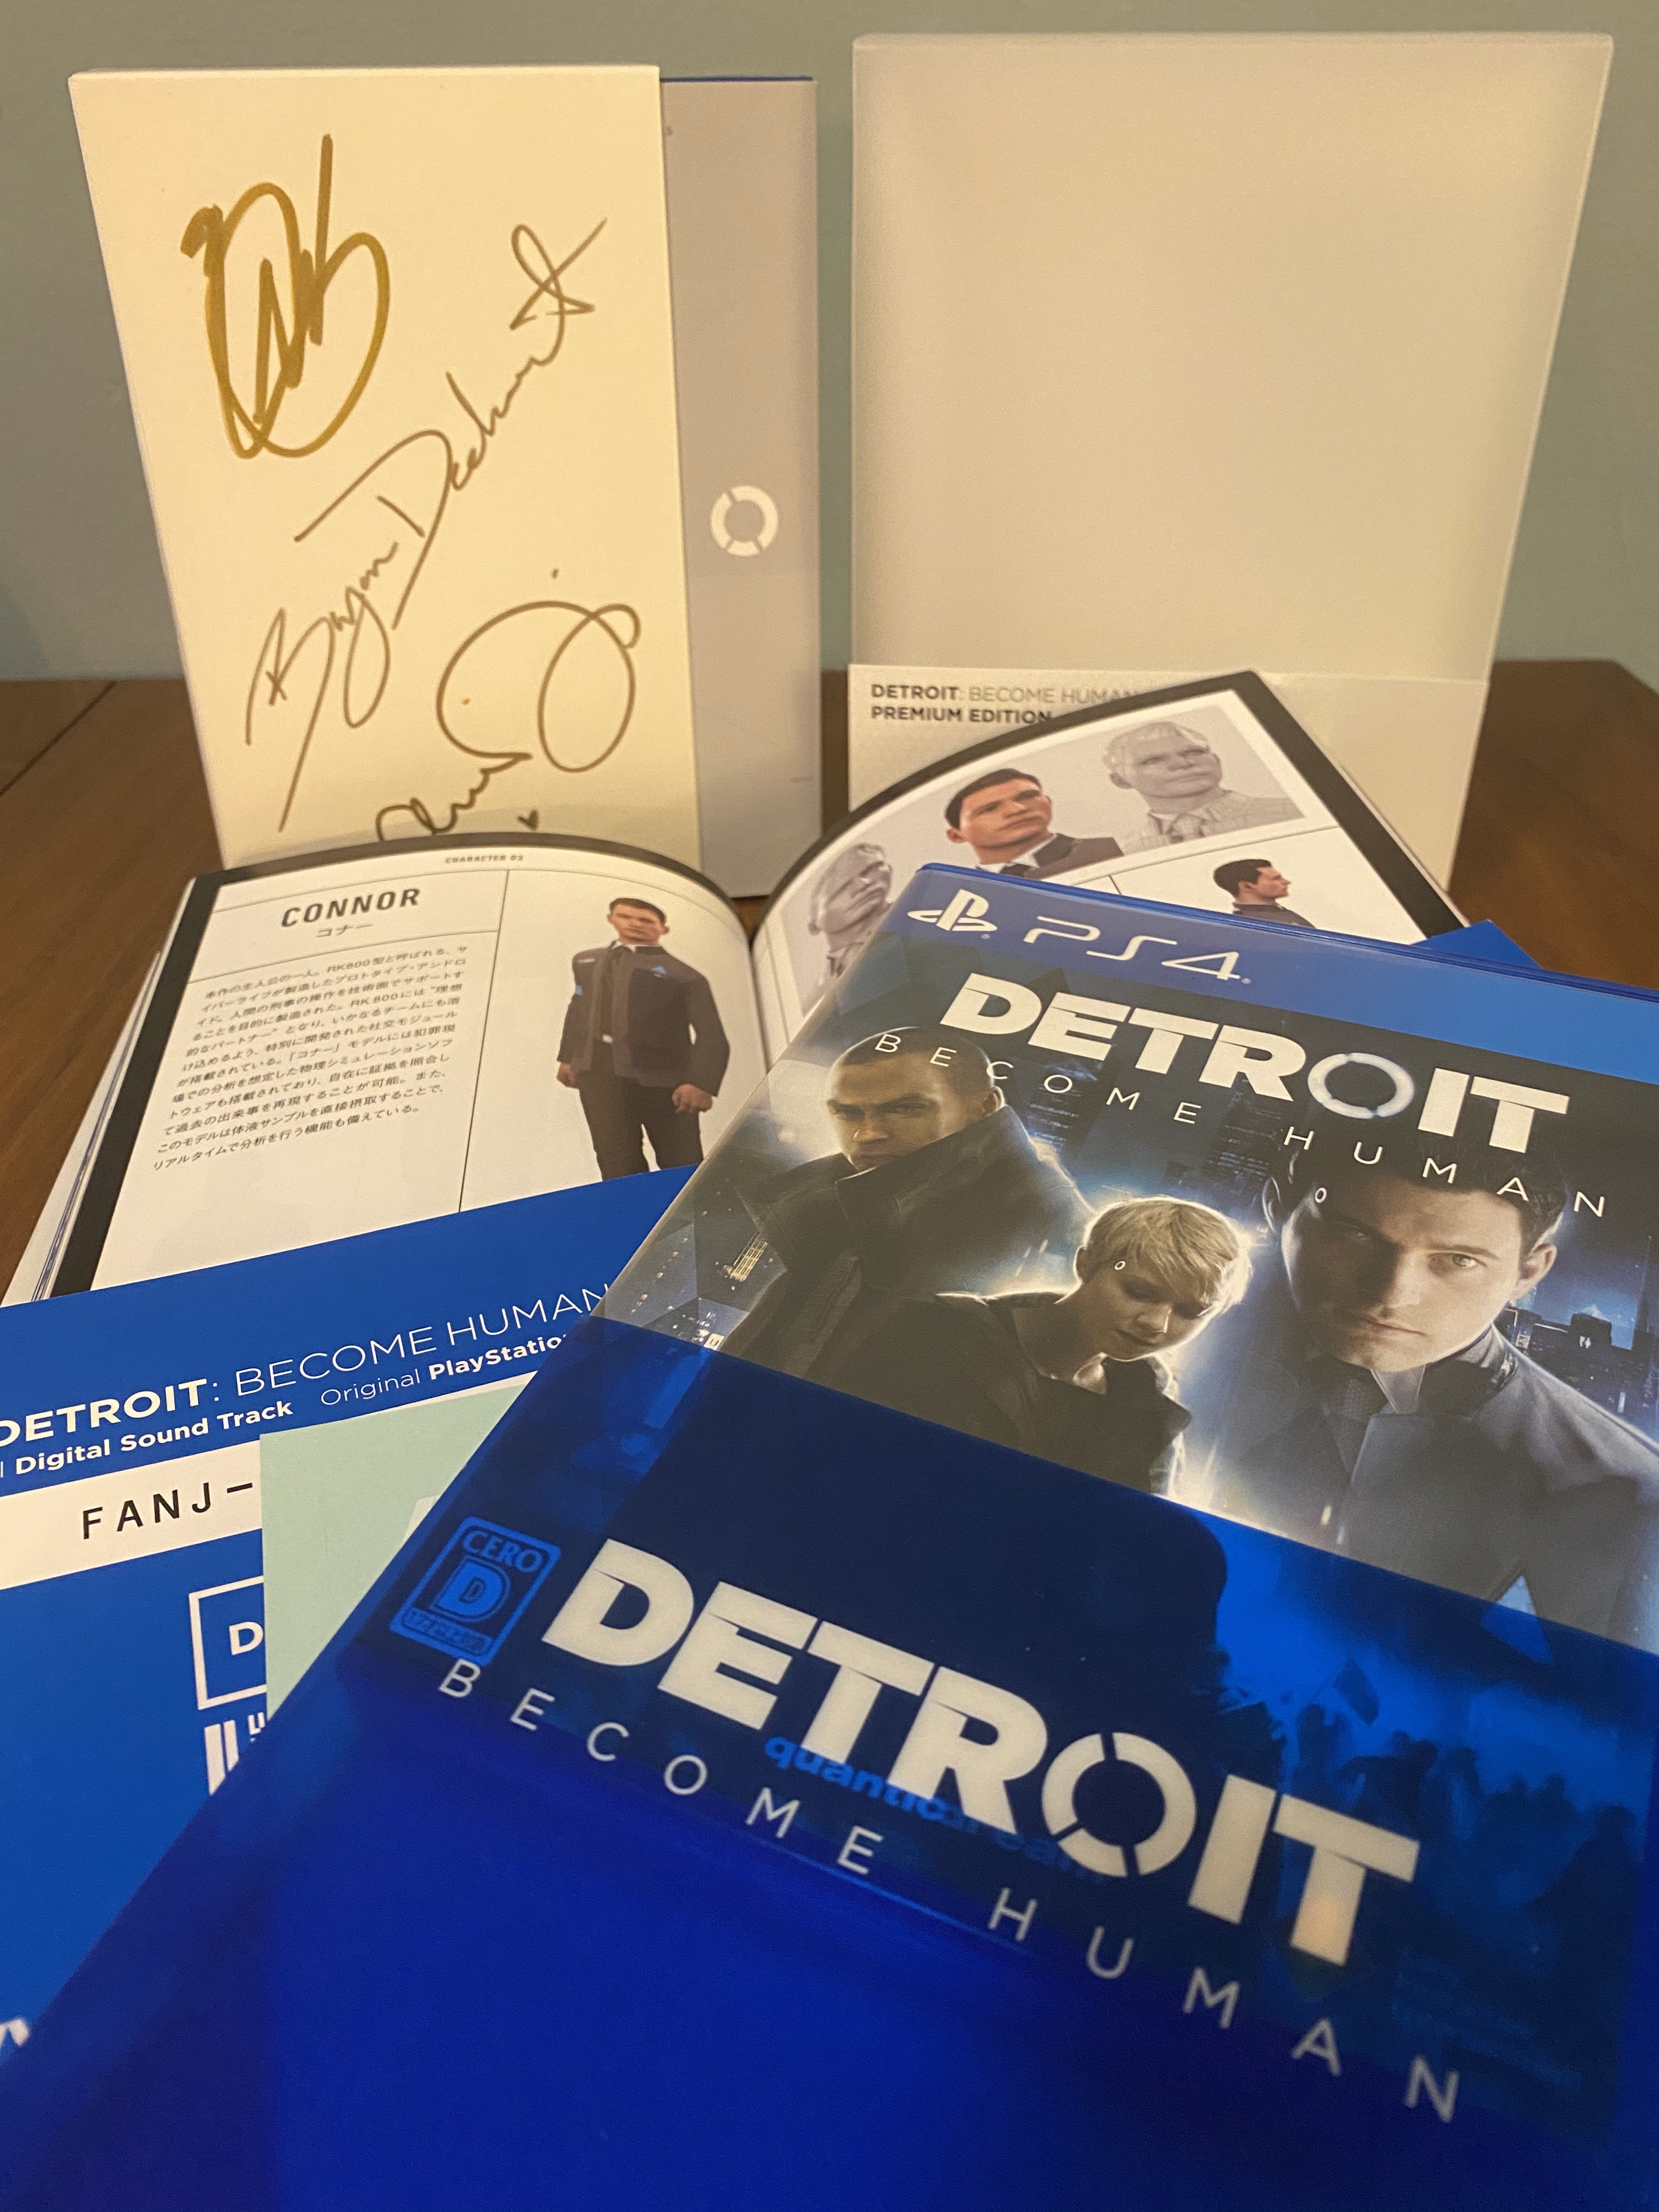 Bryan Dechart on X: < Retweet to Invite! > Celebrate Detroit